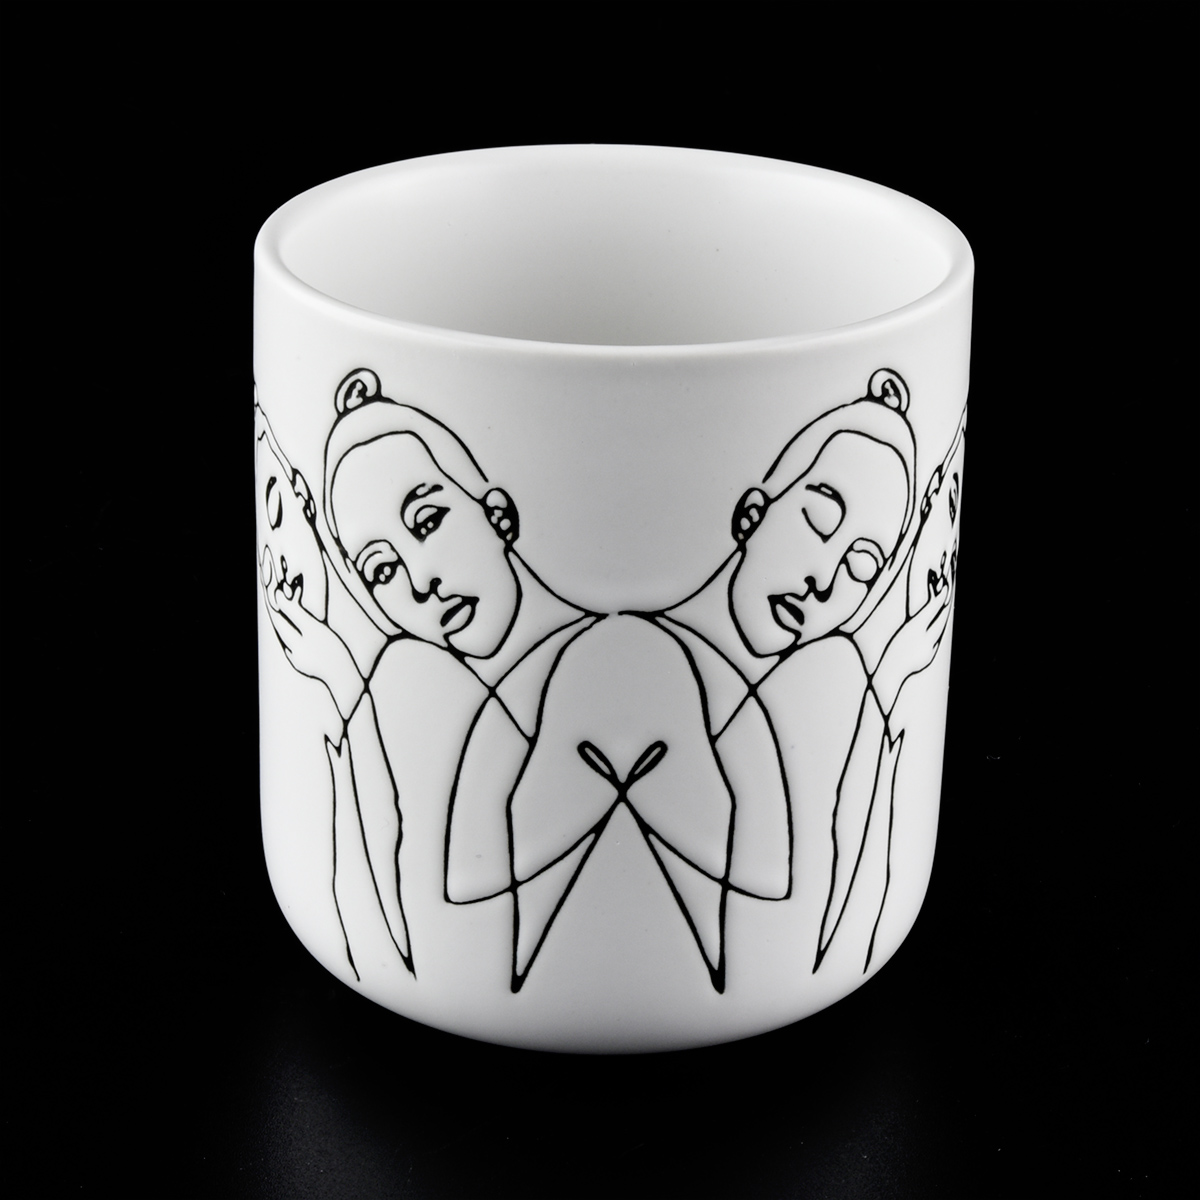 凹凸设计的哑光白色陶瓷蜡烛罐